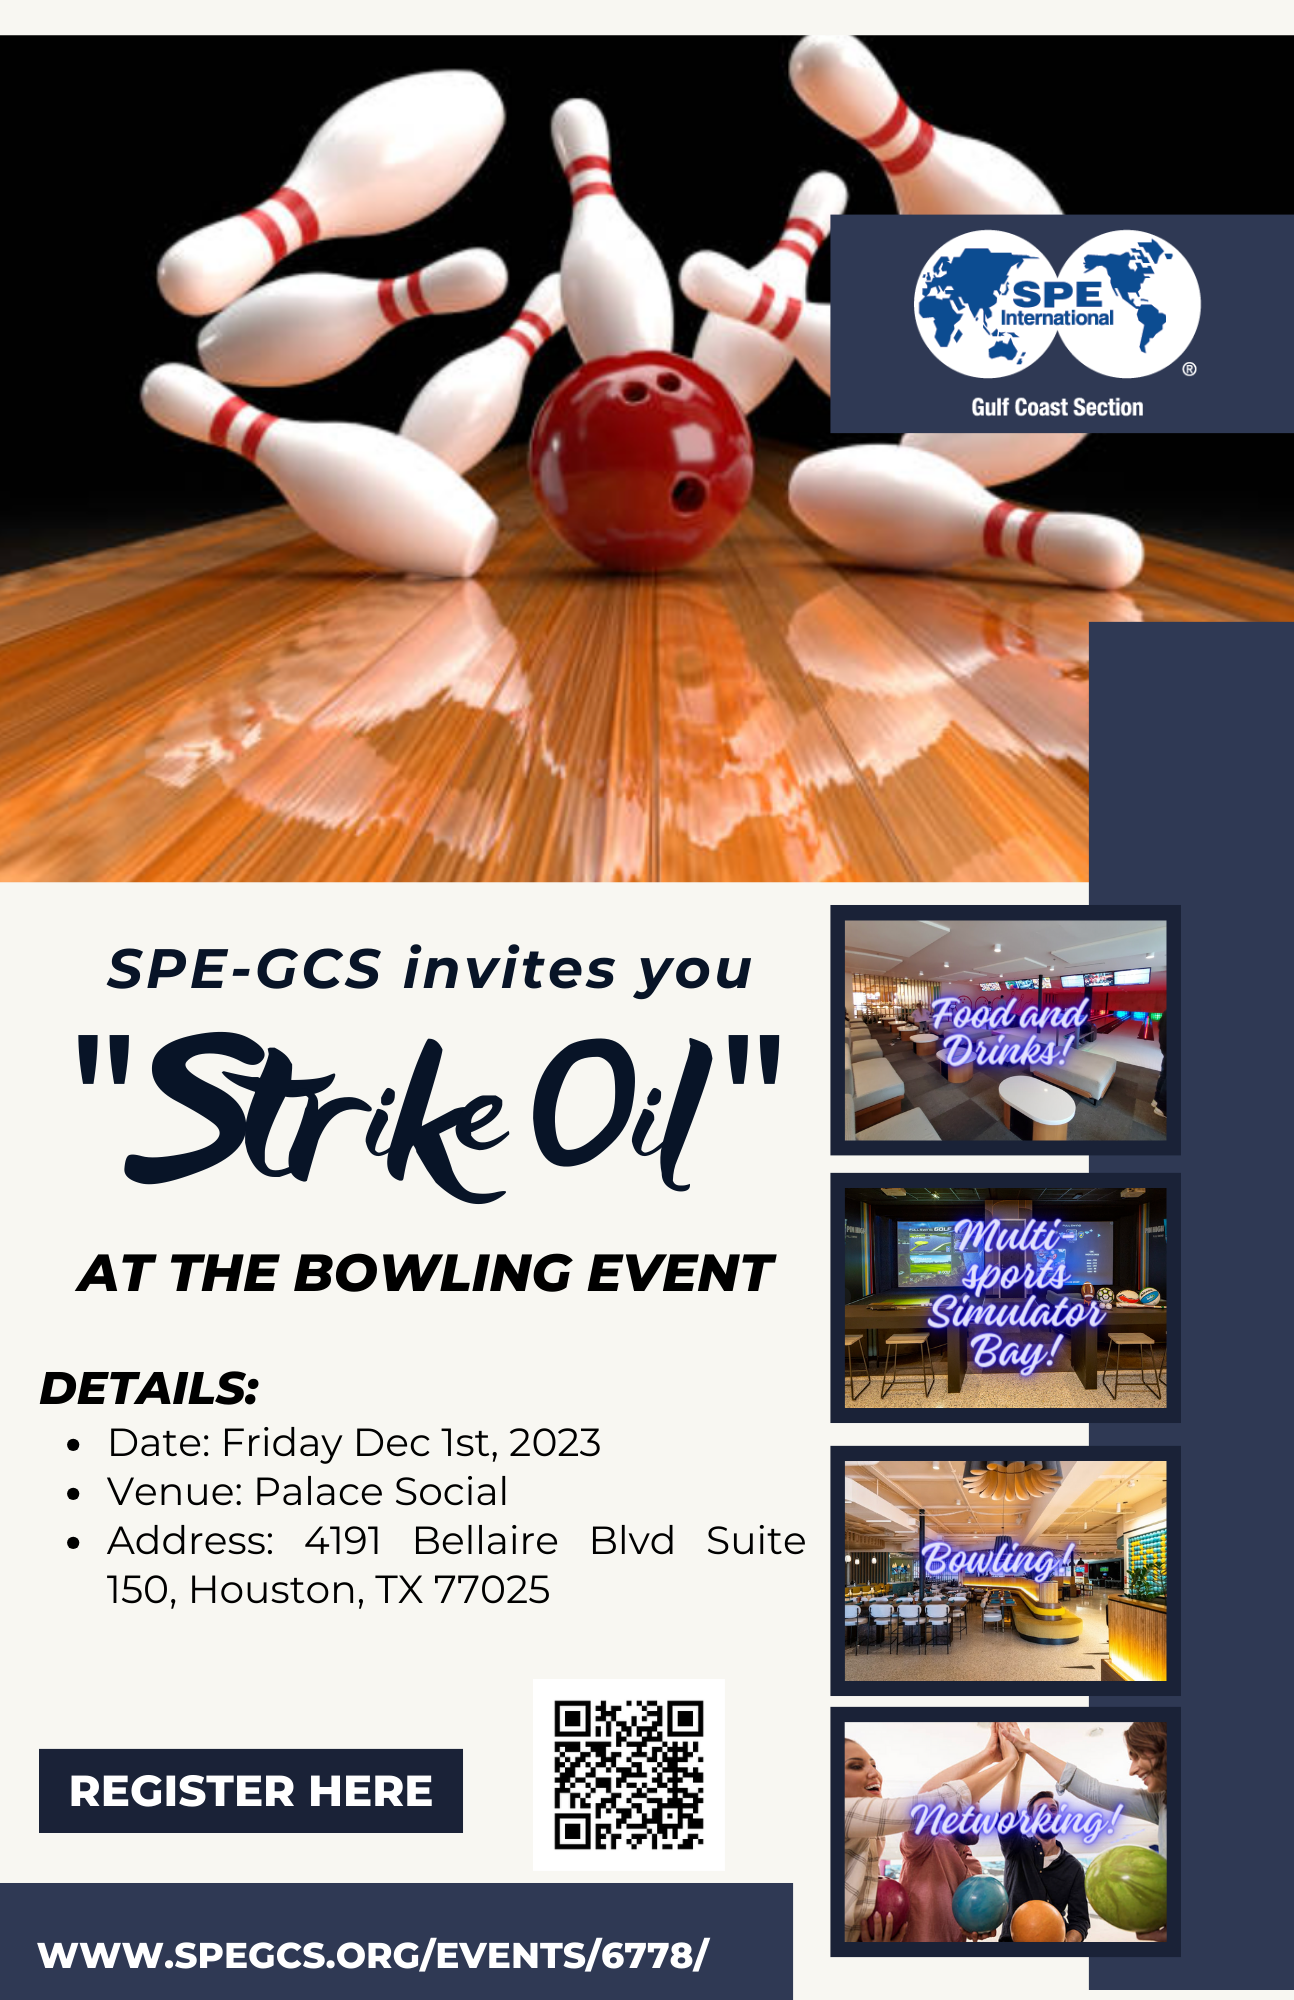 spe-gcs-bowling-event-2023